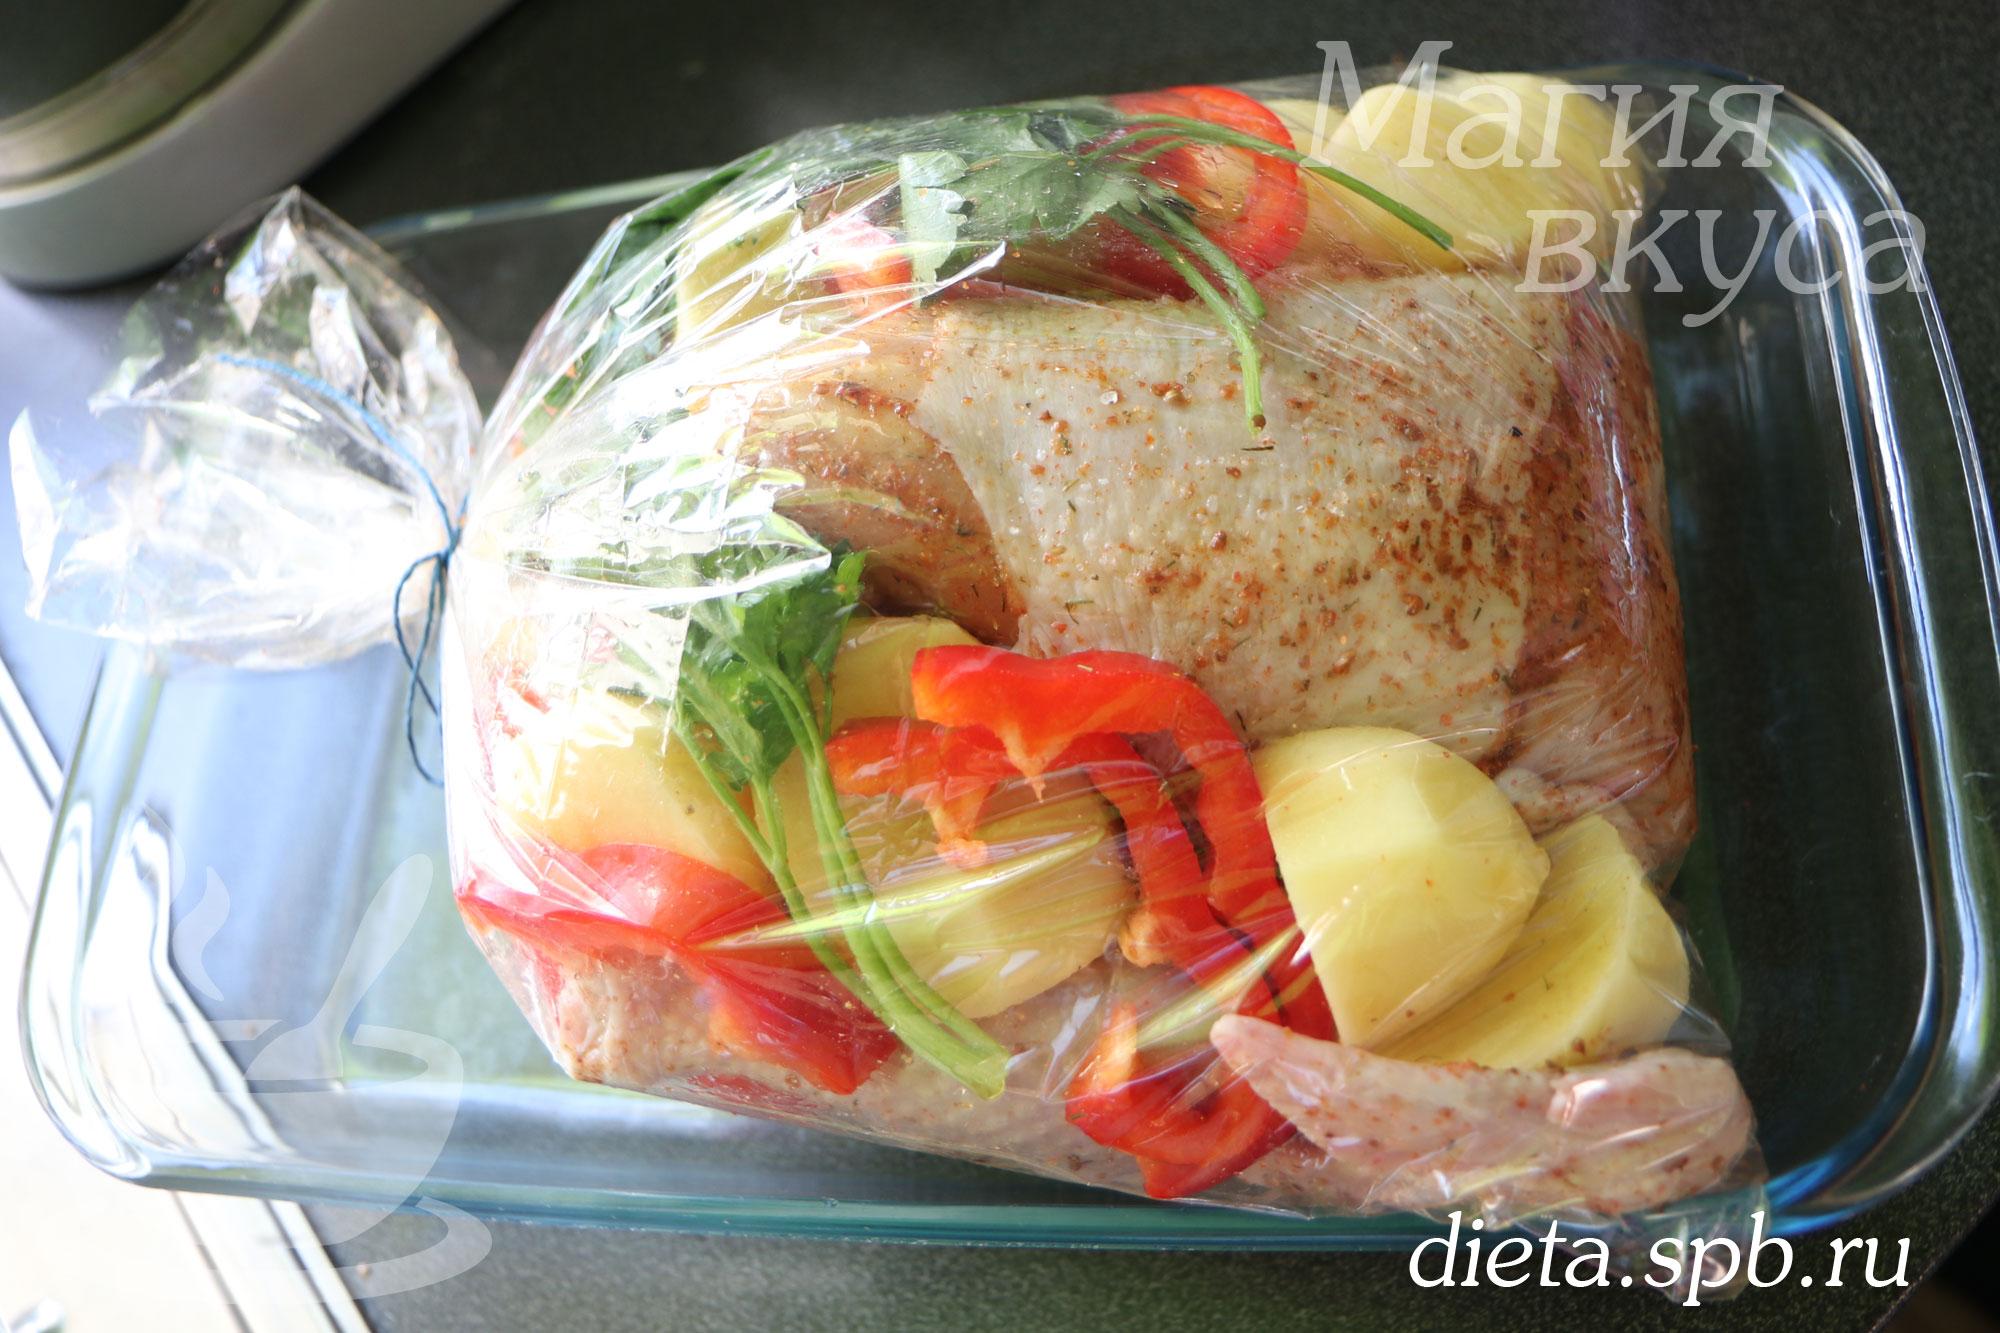 Куриное филе с овощами в пакете для запекания - рецепт с фотографиями - Patee. Рецепты